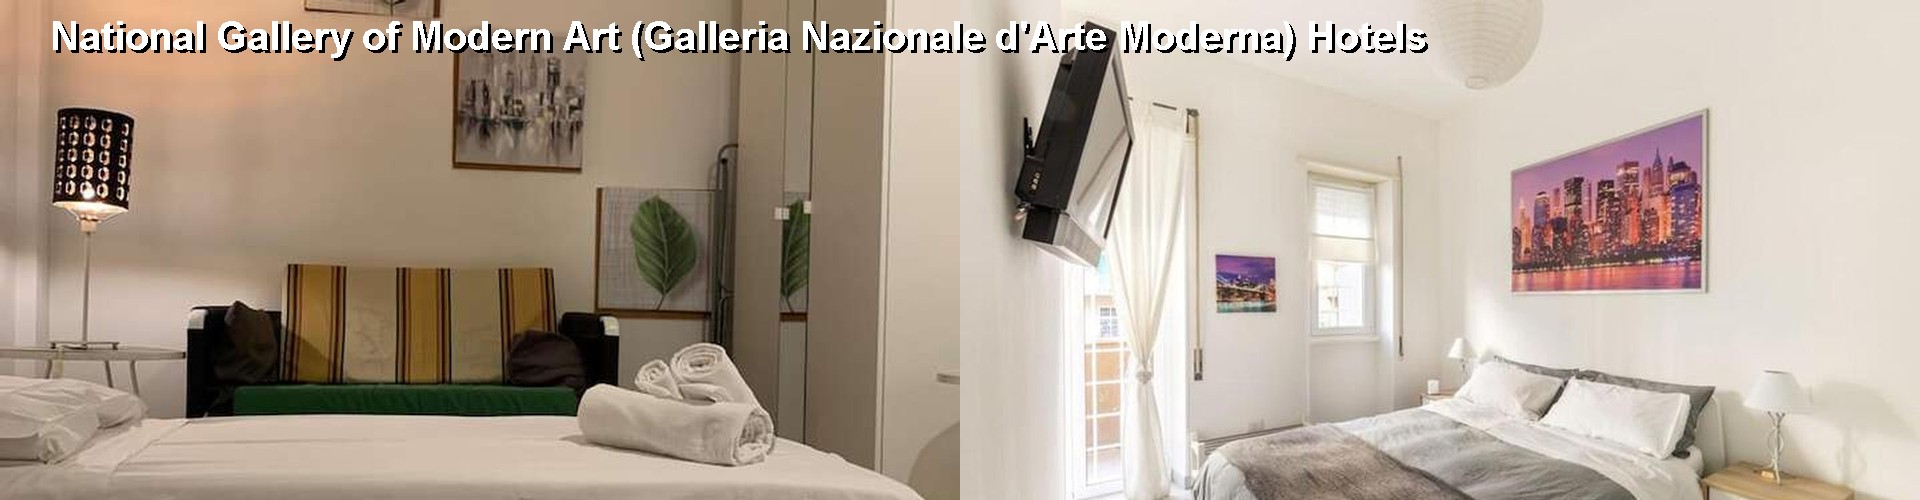 5 Best Hotels near National Gallery of Modern Art (Galleria Nazionale d'Arte Moderna)